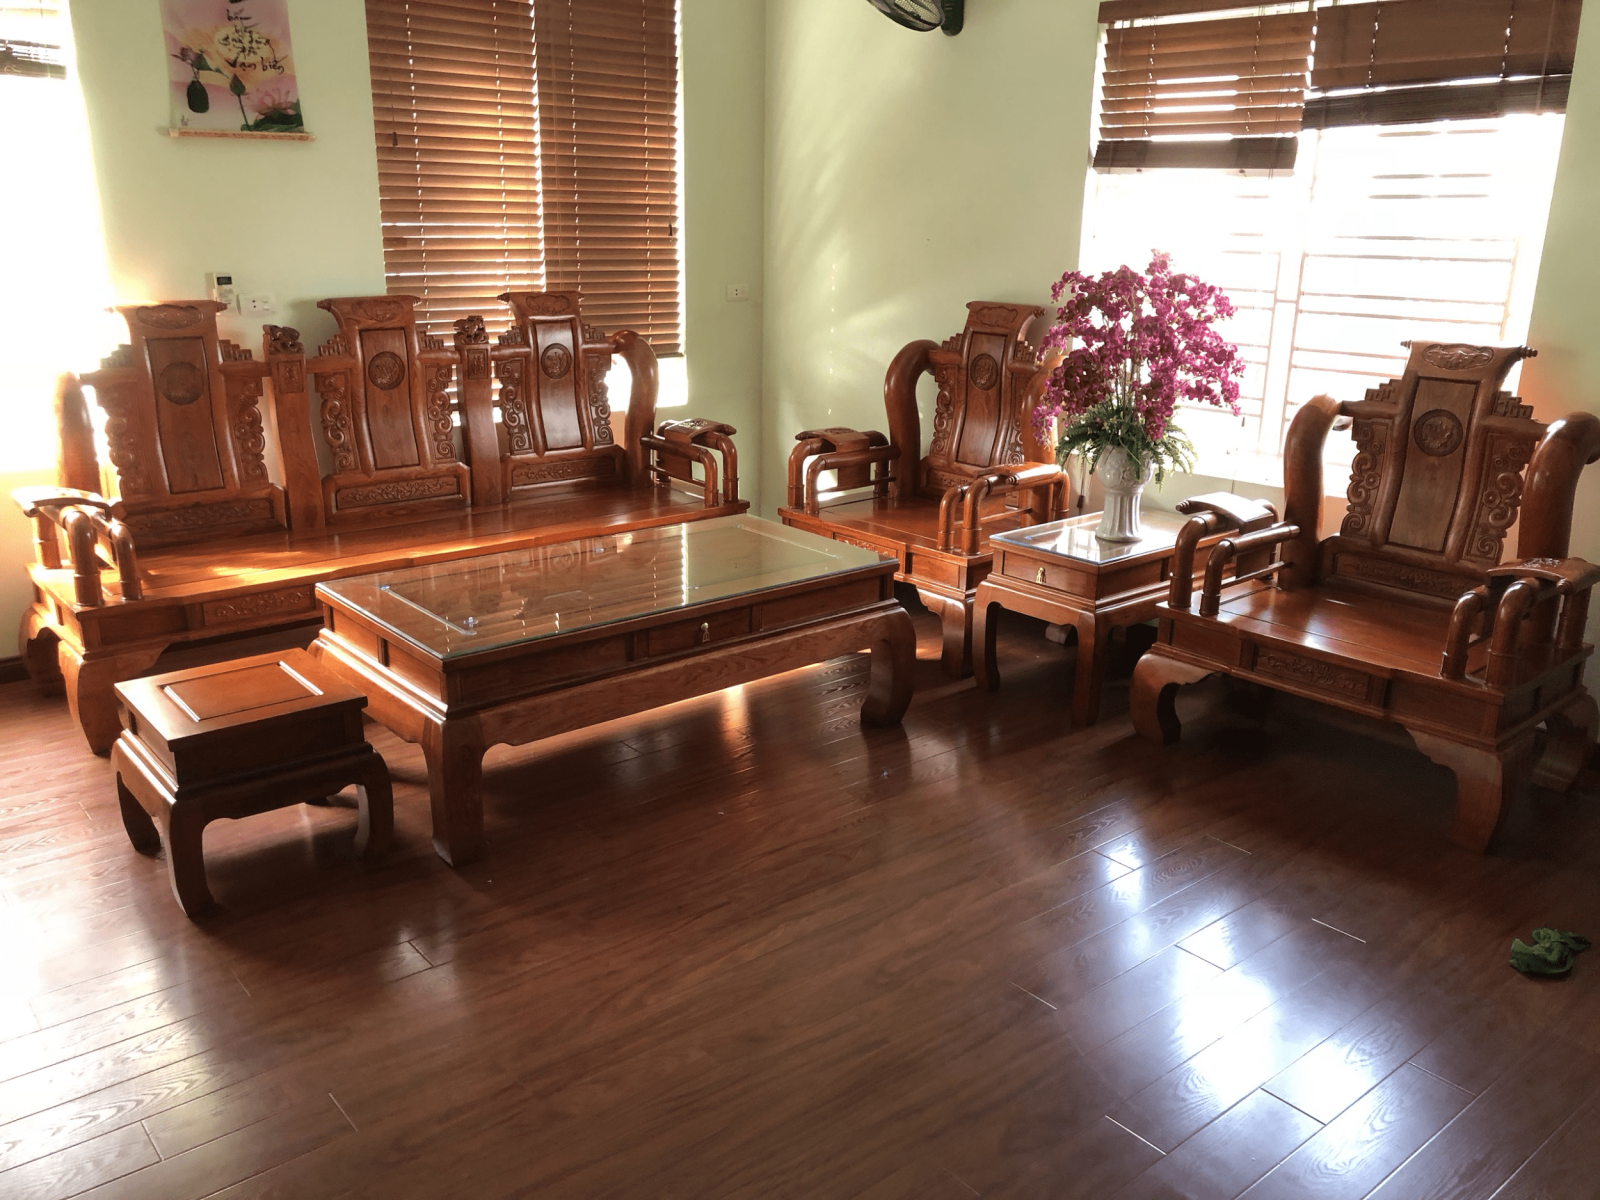 Bàn ghế phòng khách gỗ hương là sự lựa chọn hoàn hảo cho một không gian nội thất ấm cúng và sang trọng. Với chất liệu gỗ hương tự nhiên, bàn ghế sẽ mang đến không gian sống thoải mái và cảm giác làm việc tuyệt vời. Tạo nên không gian đồng điệu và tinh tế cho căn phòng của bạn.